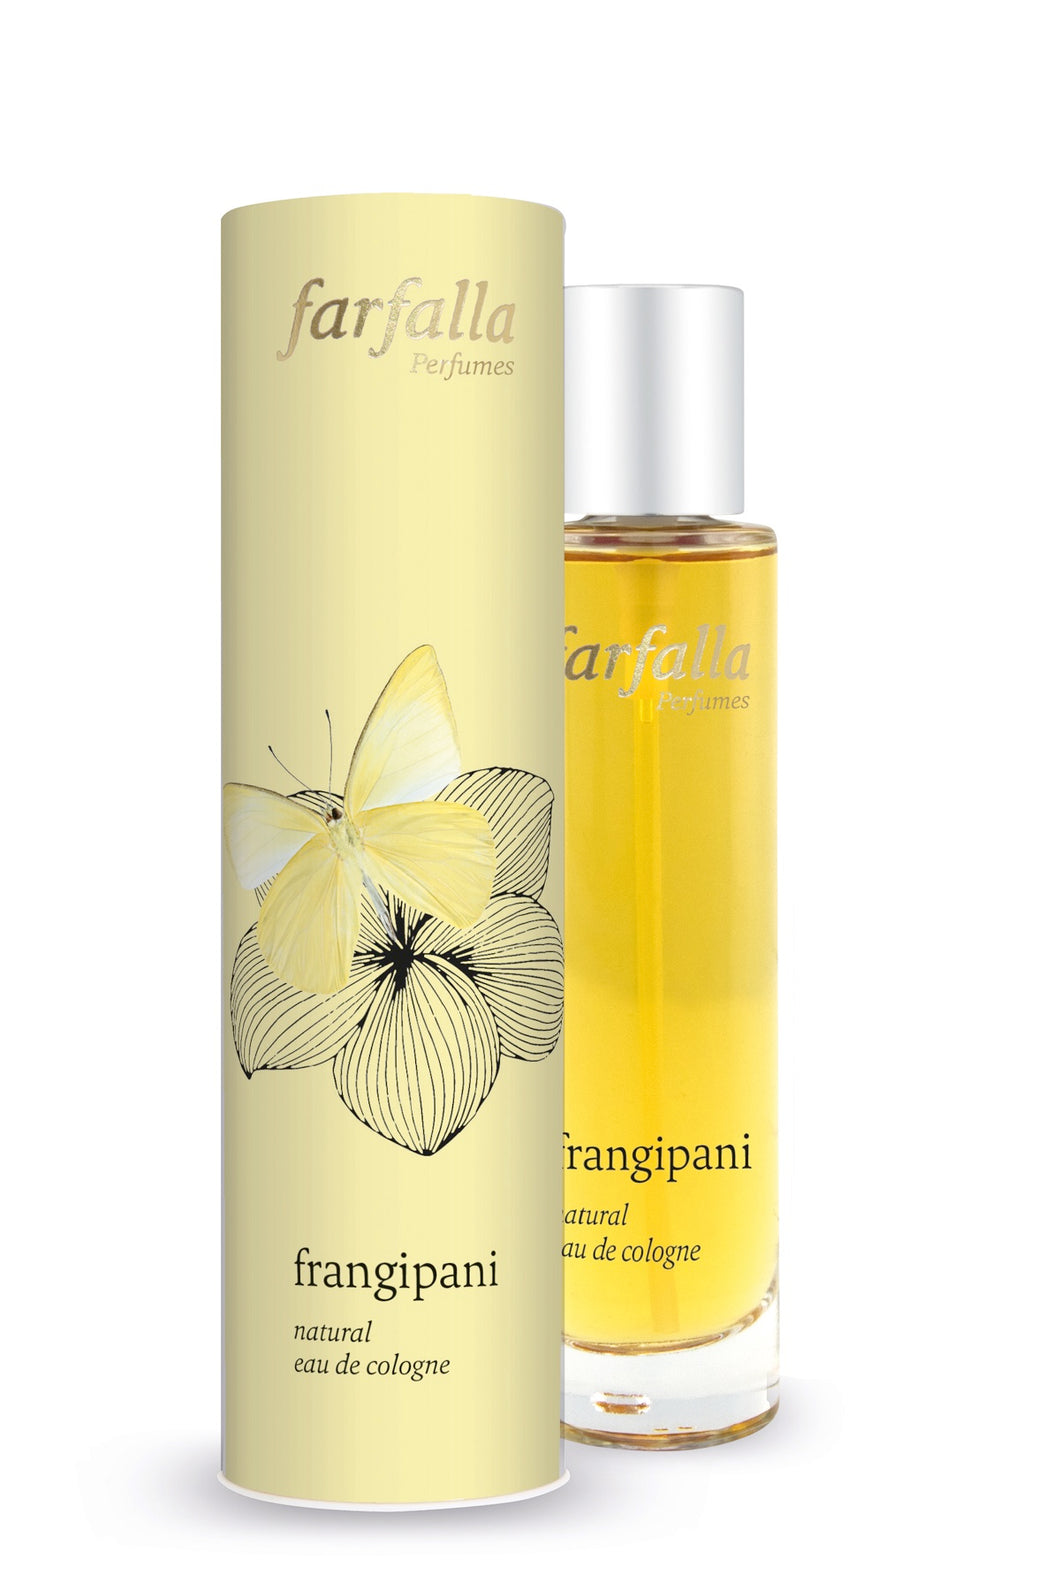 frangipani, natural eau de cologne, 50ml